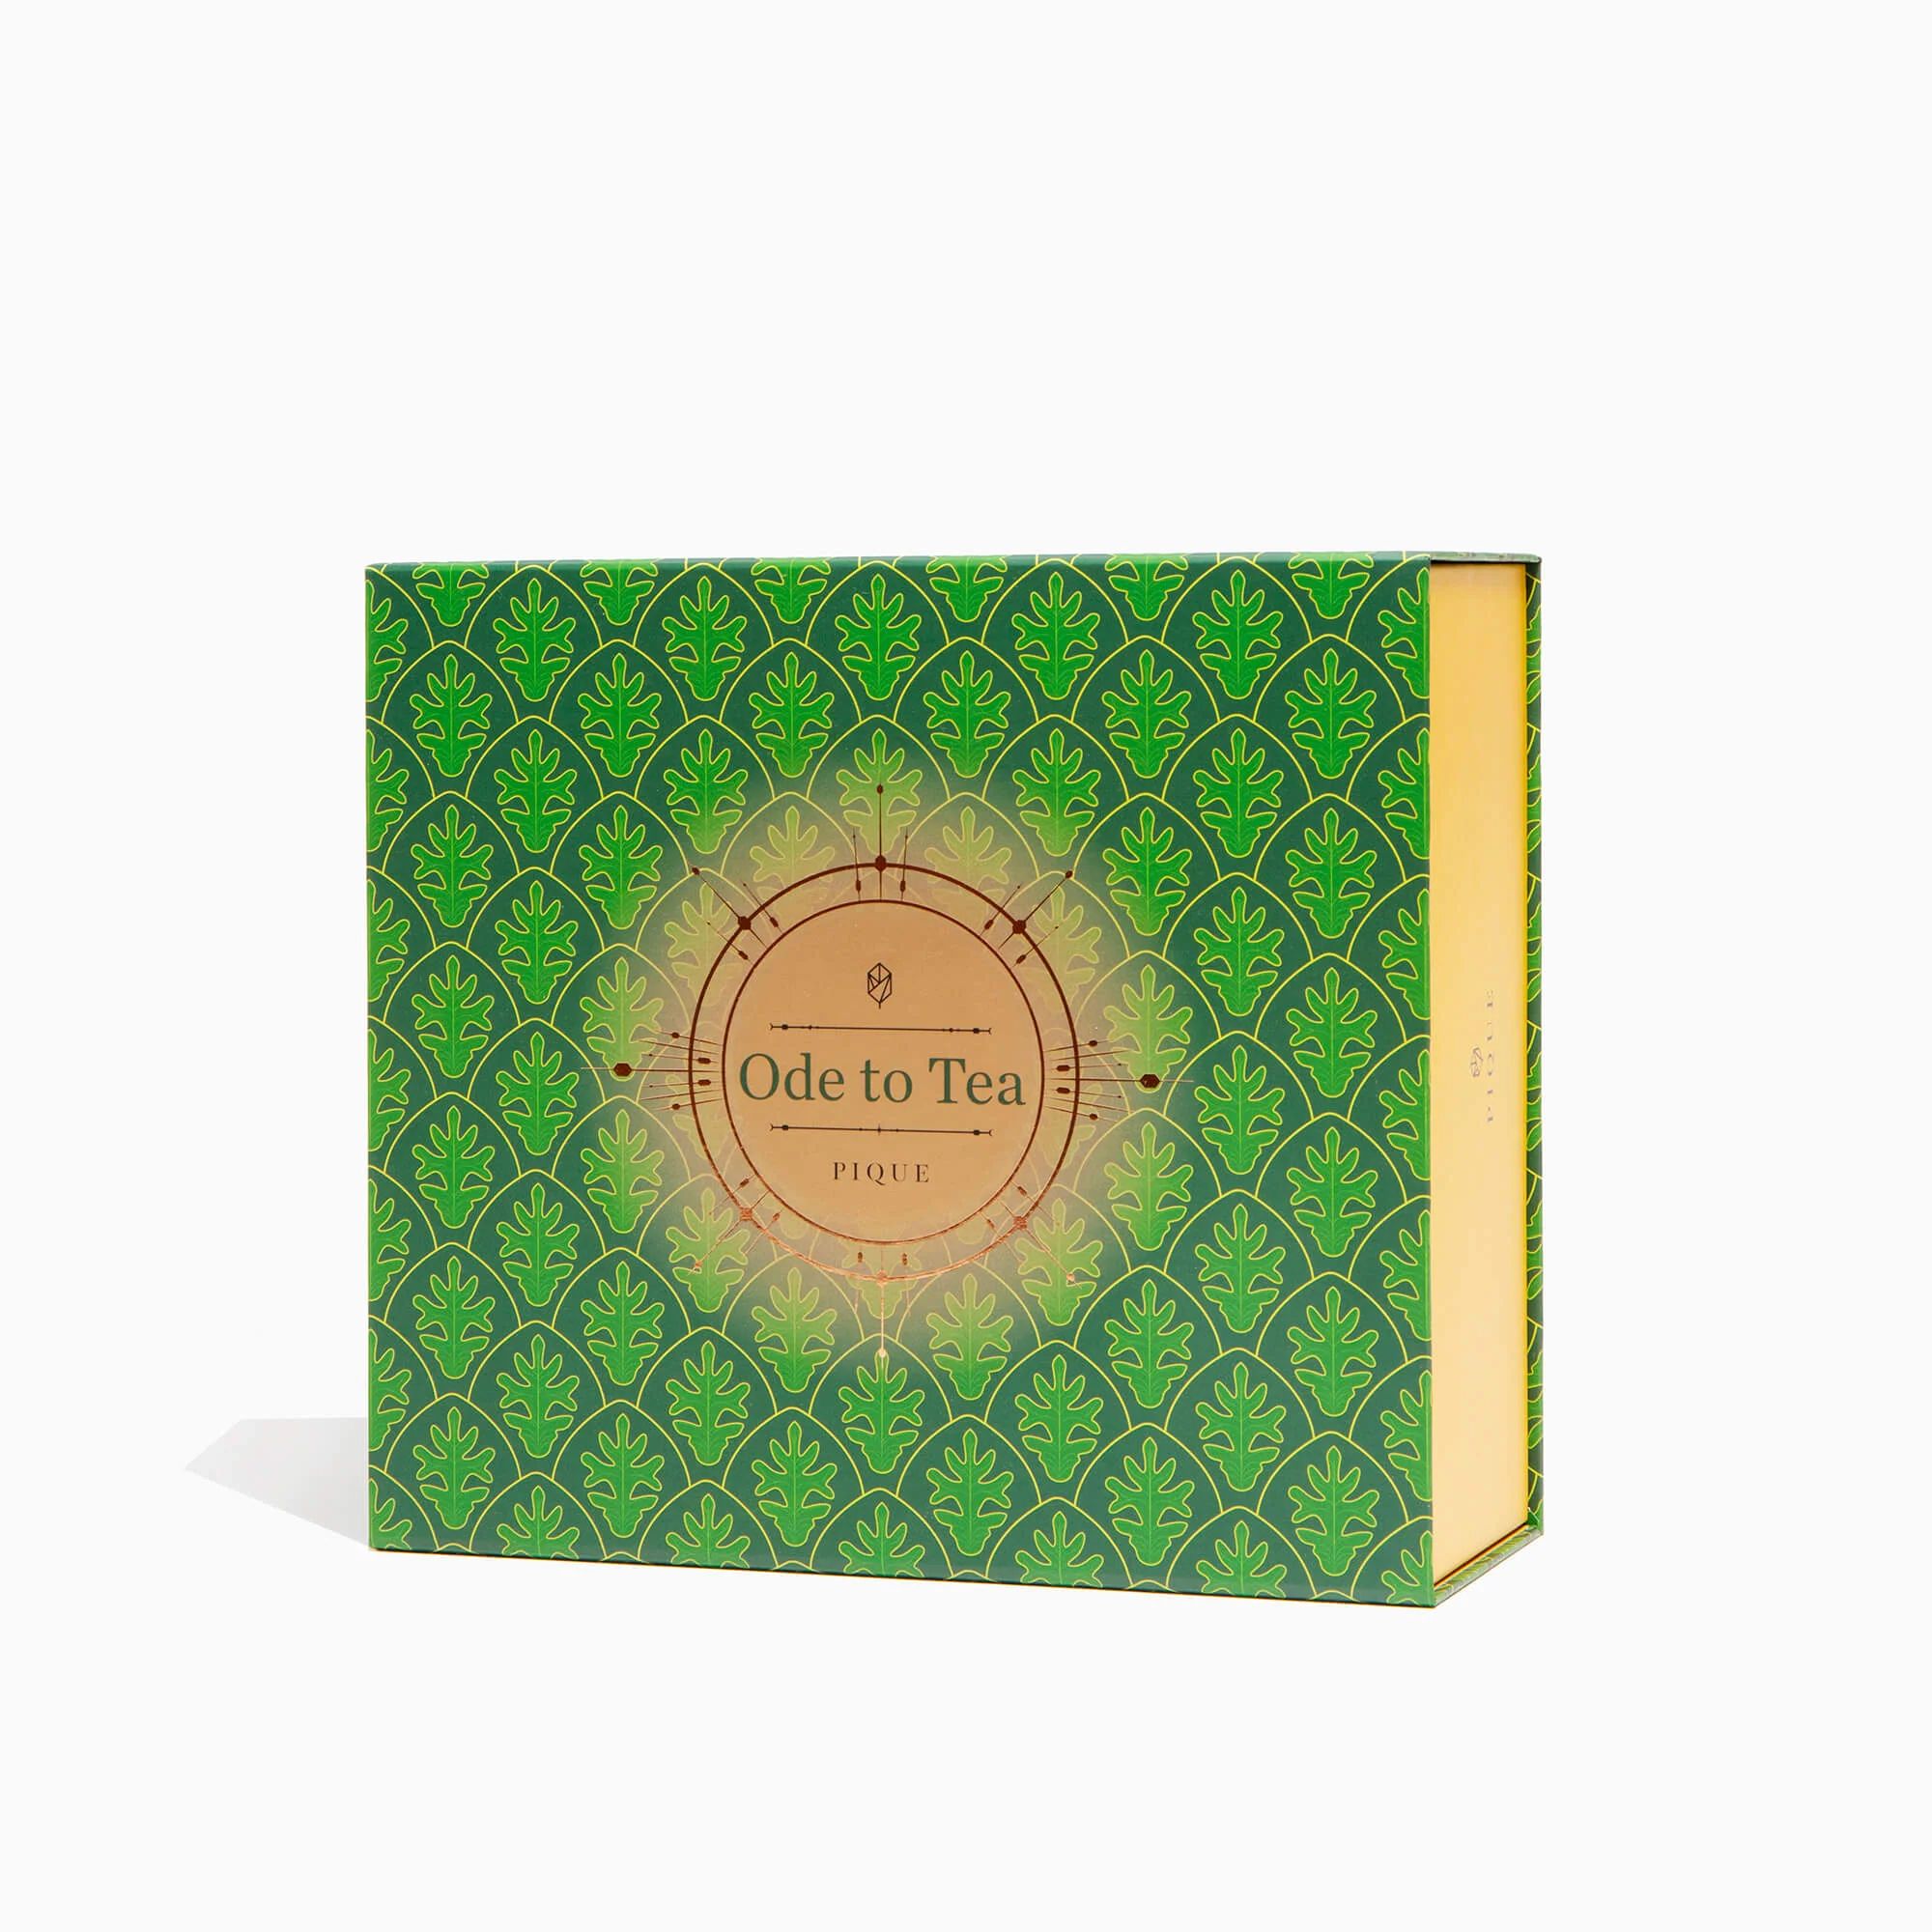 Ode to Tea Gift Box | Pique Tea